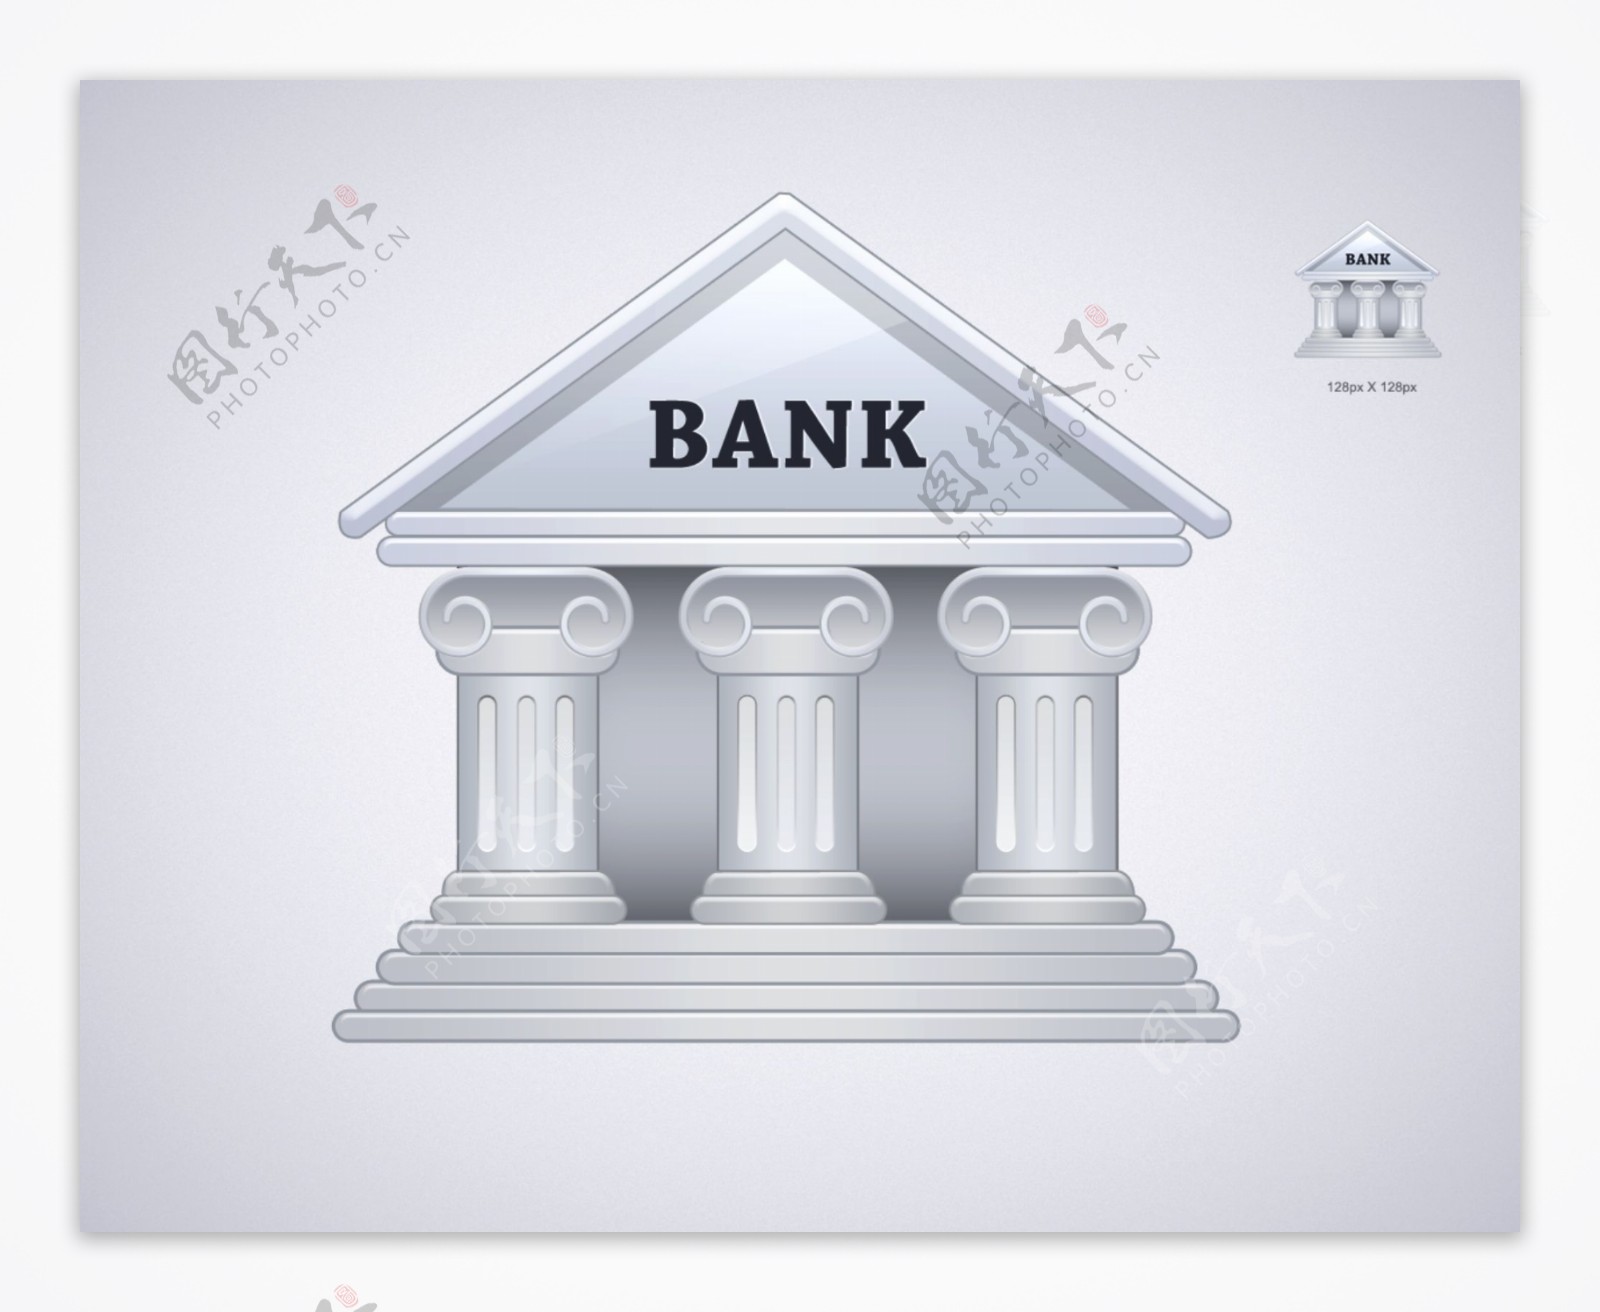 银行建筑图标icon设计